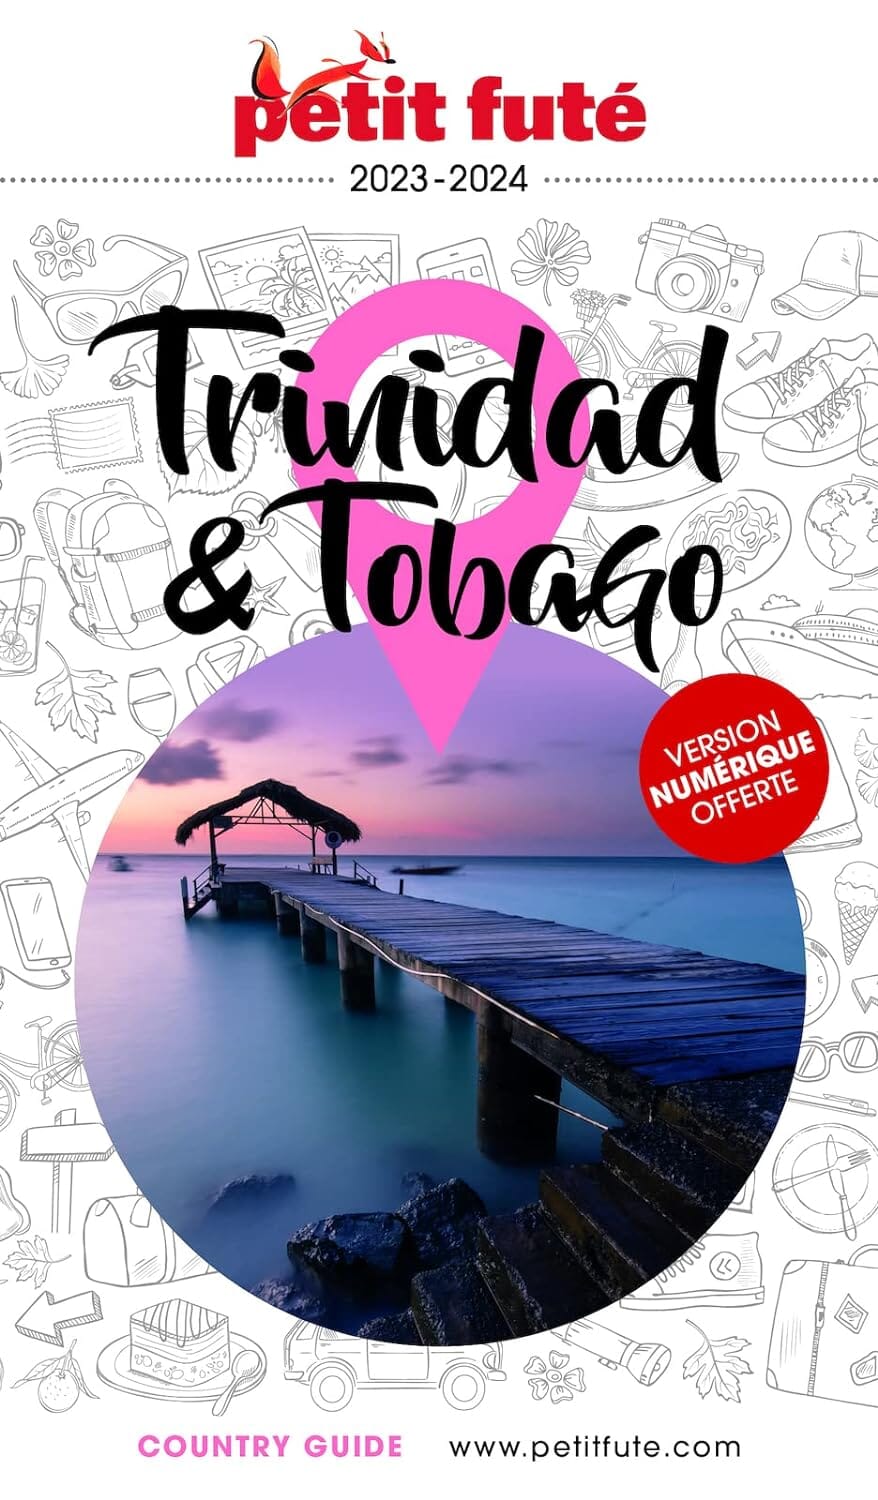 Guide de voyage - Trinidad & Tobago 2023/24 | Petit Futé guide de voyage Petit Futé 